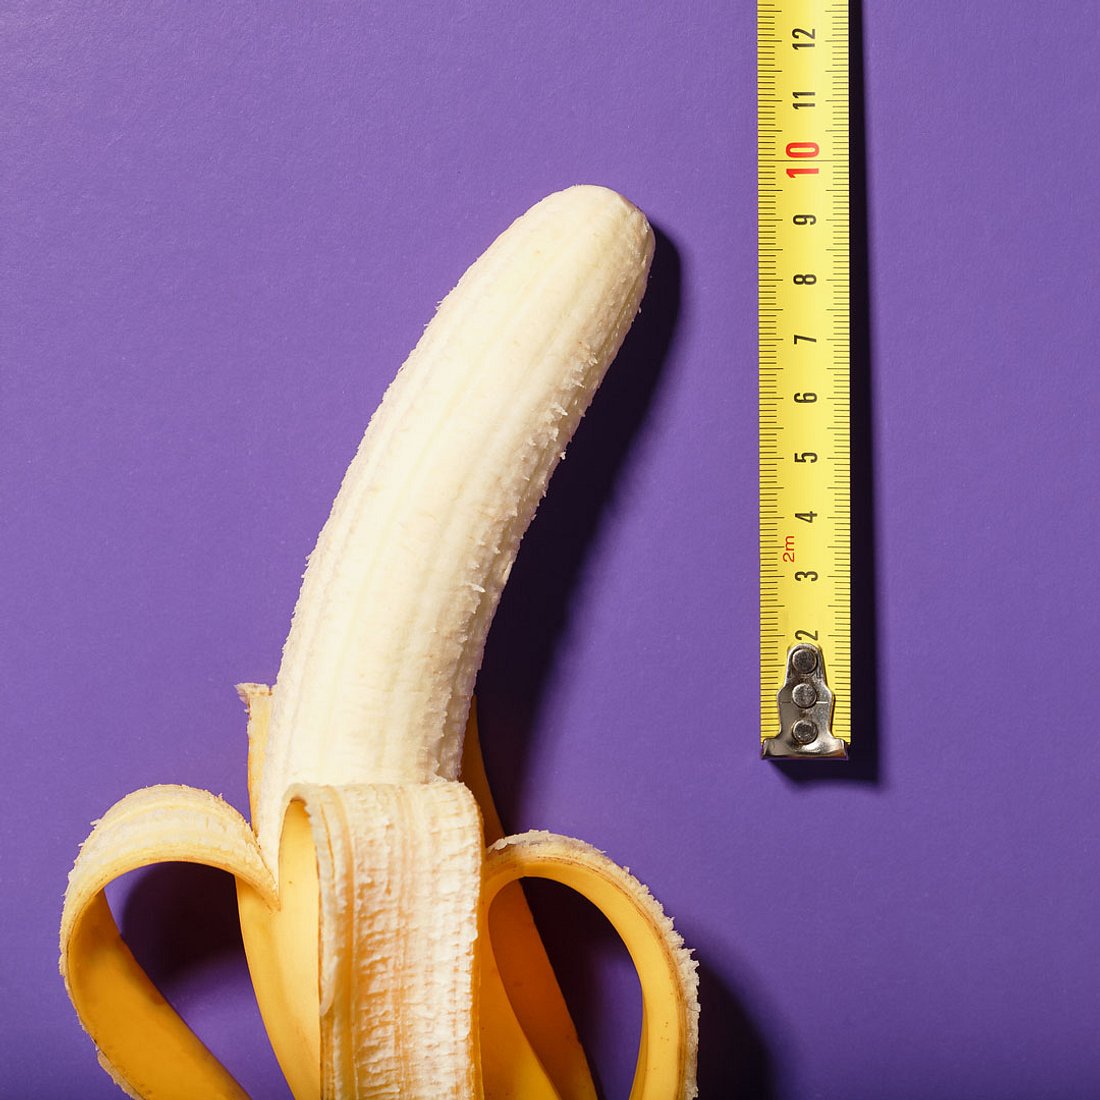 Penis zu klein: Diese Größe ist normal!